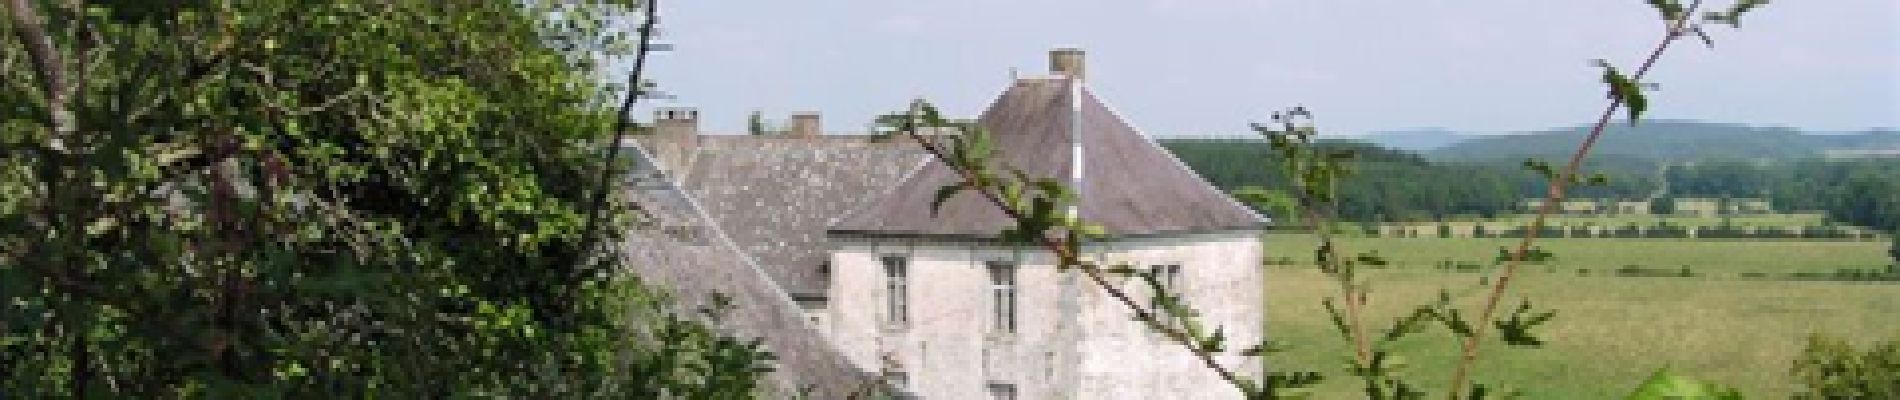 Point d'intérêt Beauraing - Chateau de Revogne - Photo